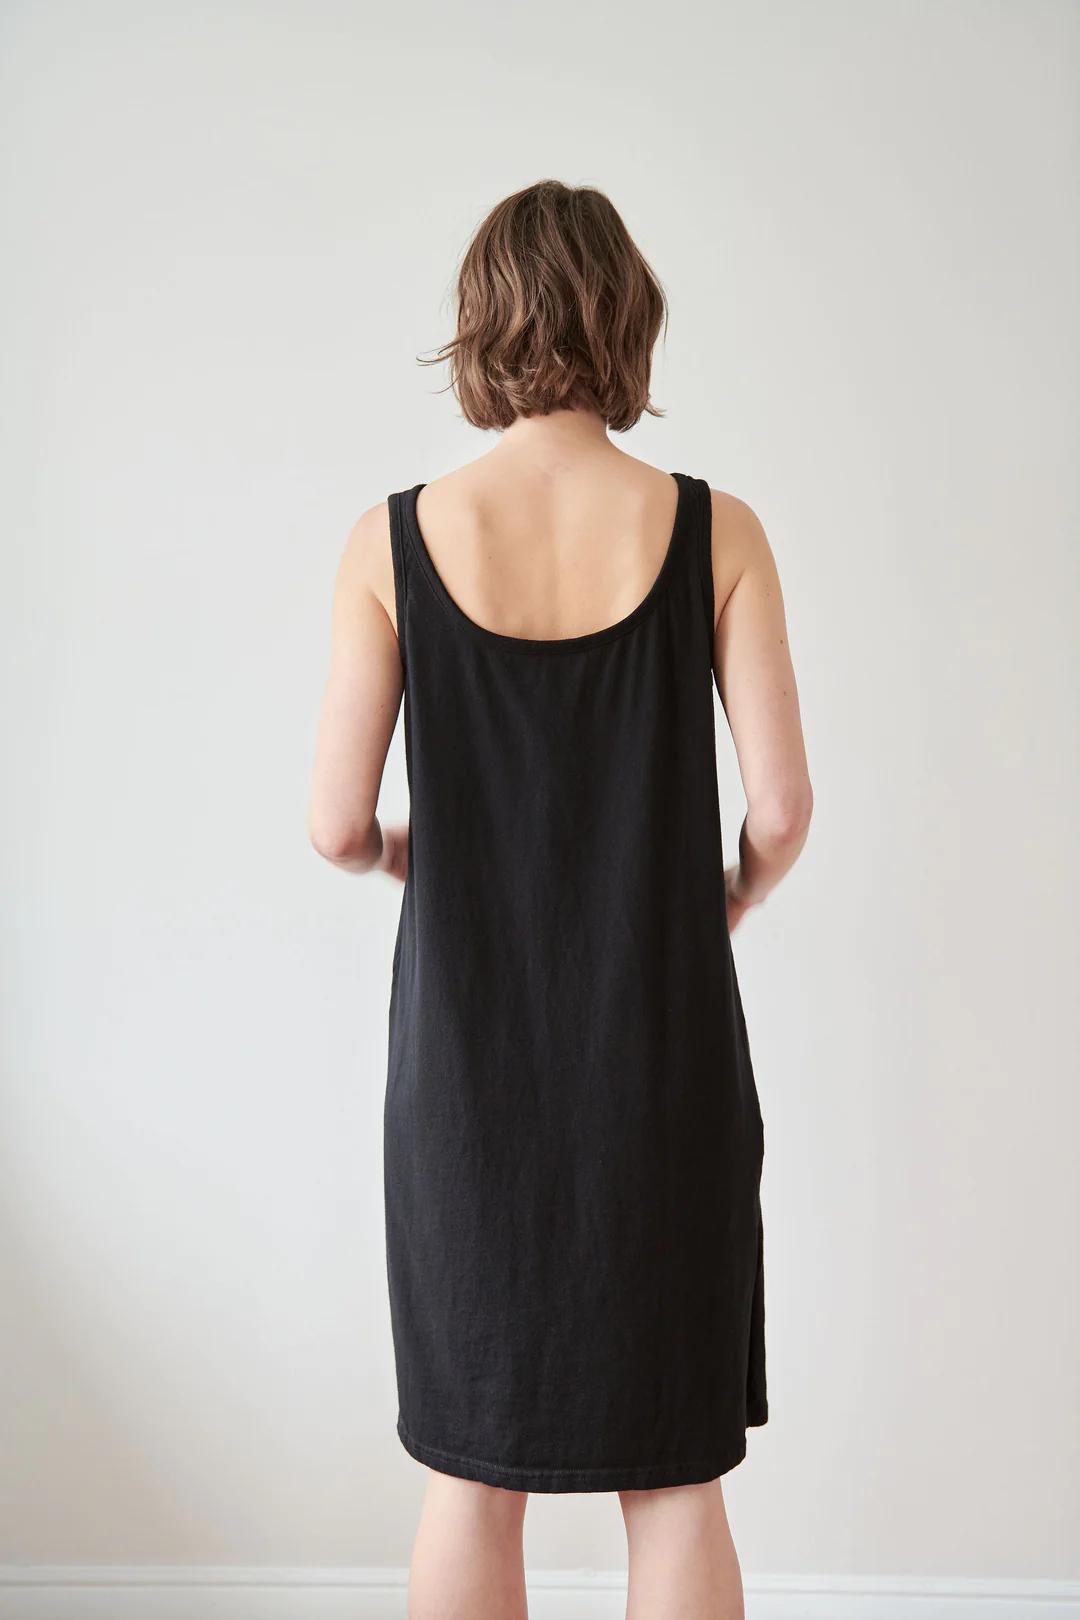 Product Image for Boatneck Dress, Black